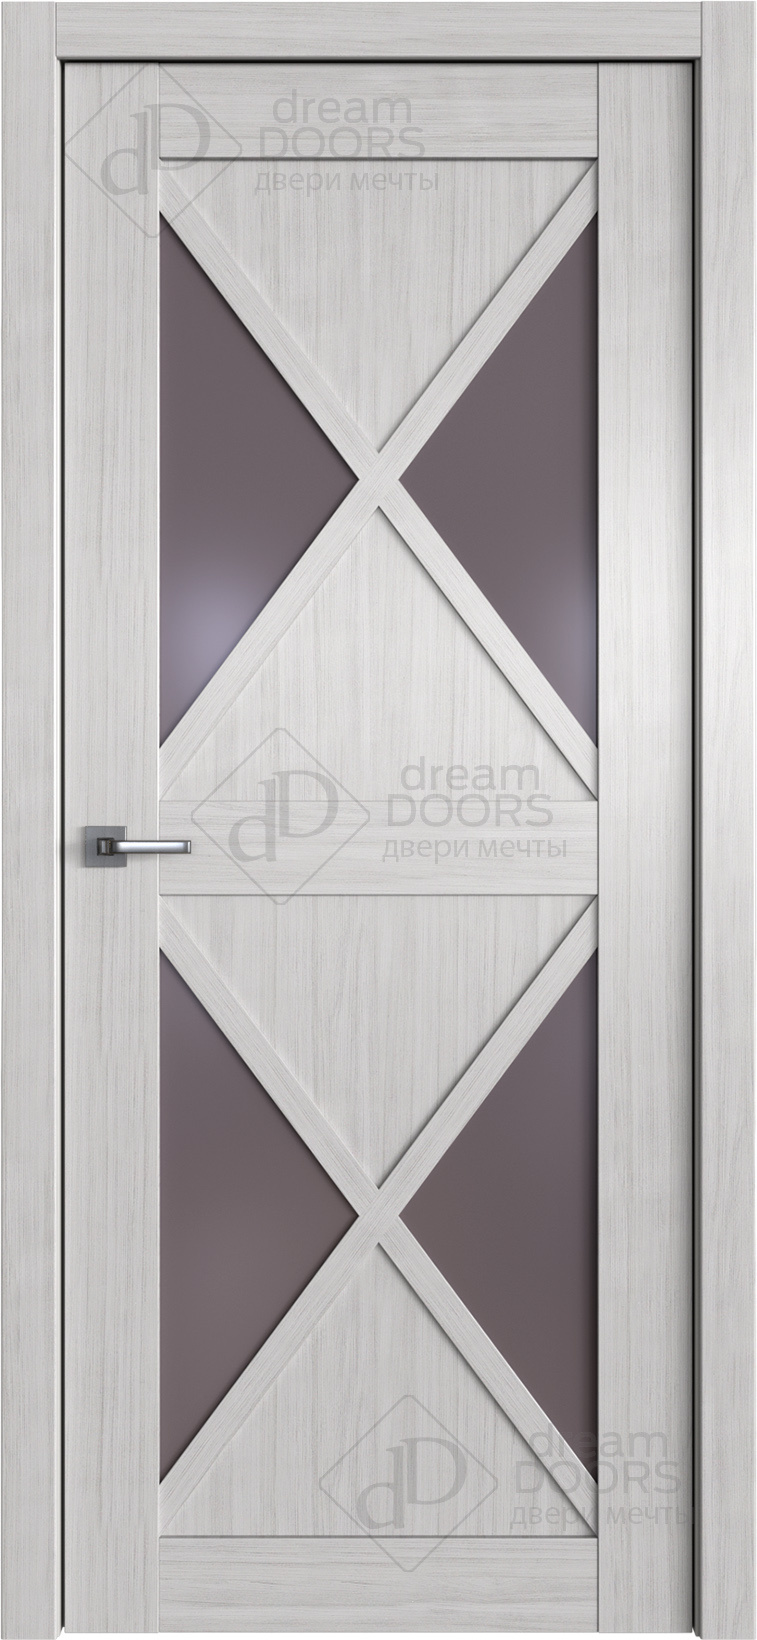 Dream Doors Межкомнатная дверь W41, арт. 20101 - фото №1